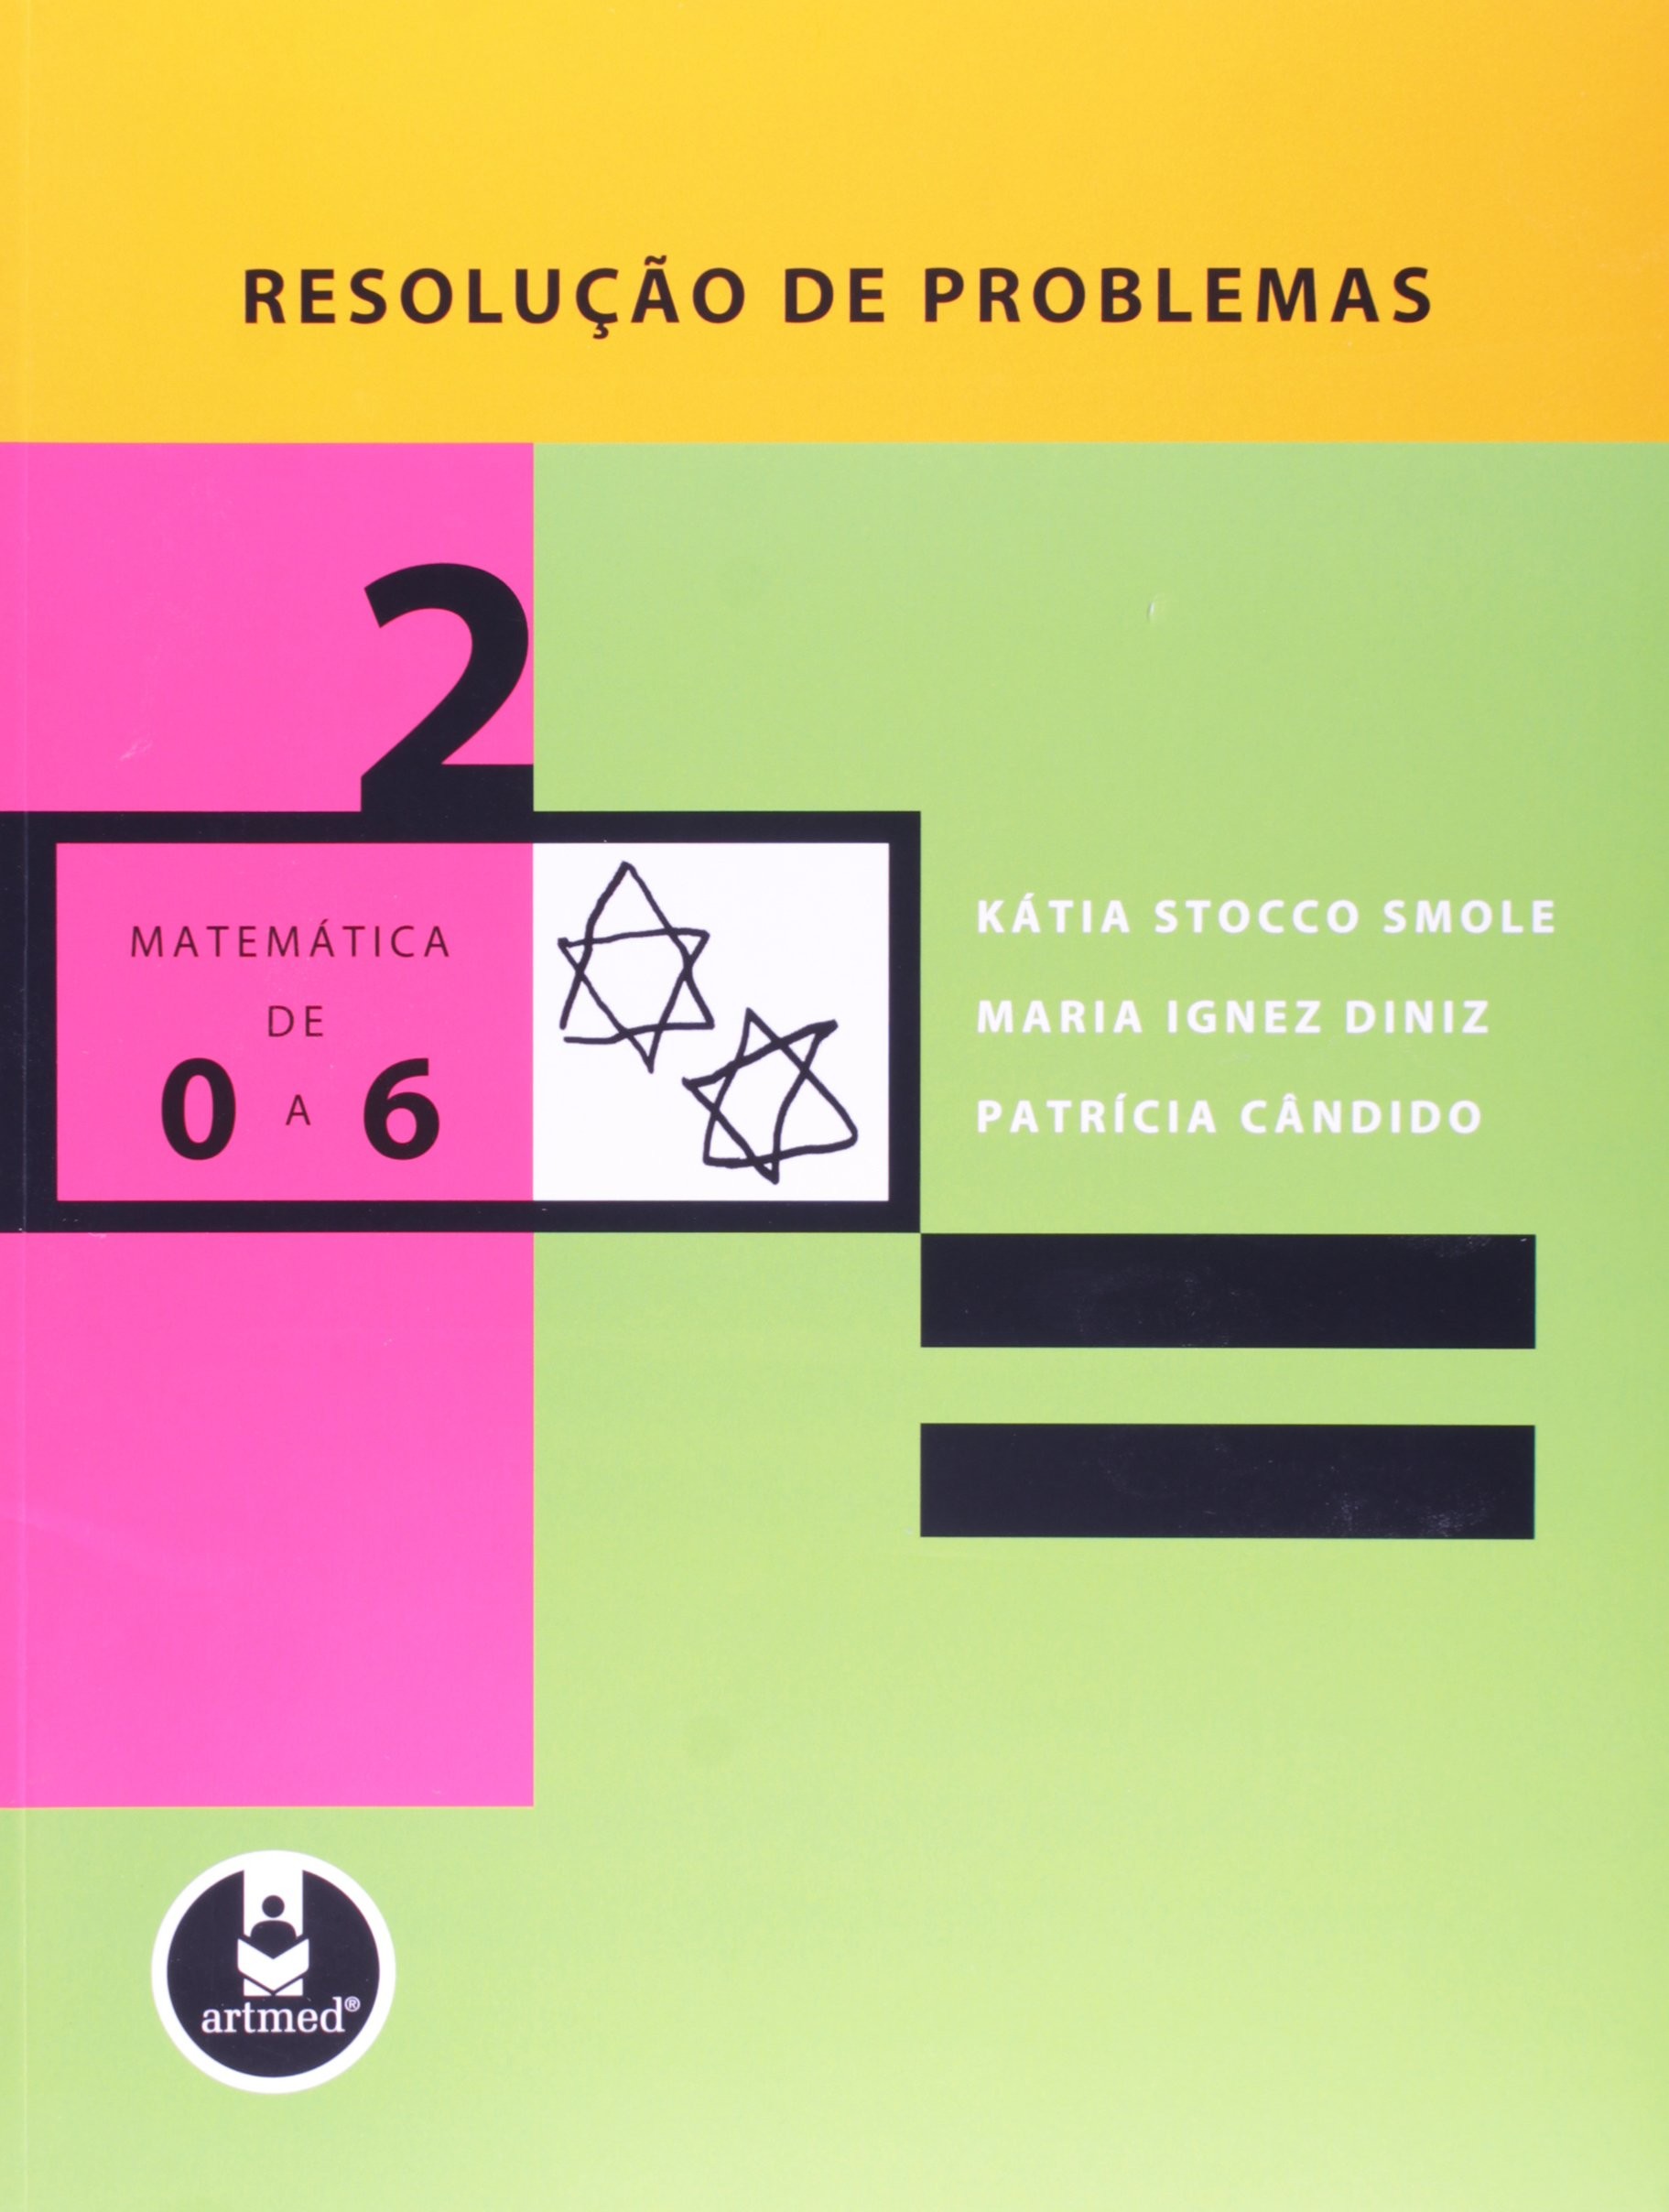 Cadernos do Mathema - Ensino Fundamental: Volume 1 - Jogos de